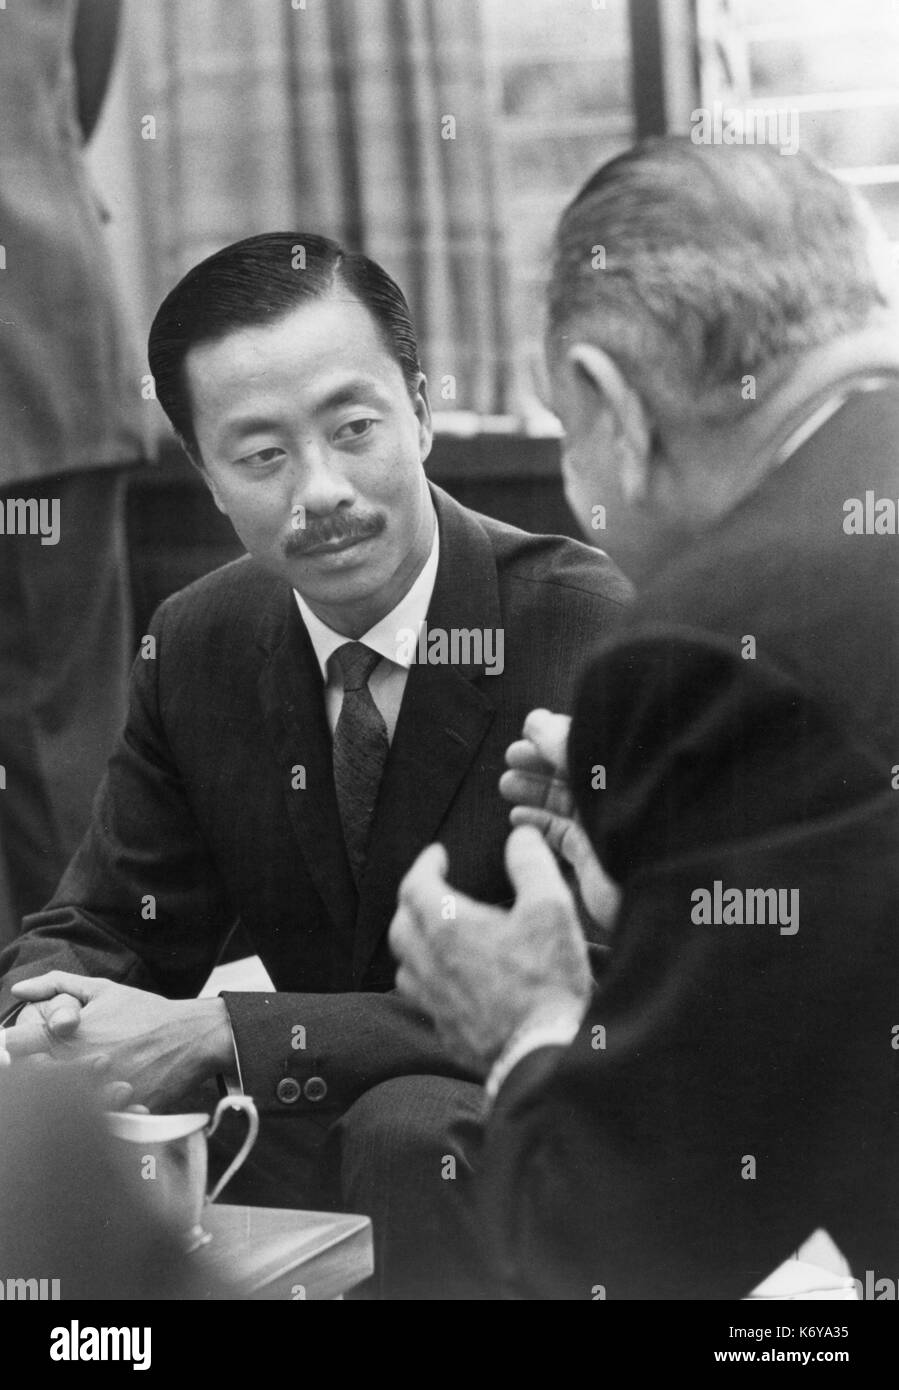 Le Président Lyndon B. Johnson avec le Vietnam du Sud Le Premier Ministre Nguyen Cao Ky lors d'une pause dans les réunions officielles concernant la situation du Vietnam. Honolulu, Hawaii, 1965. Banque D'Images